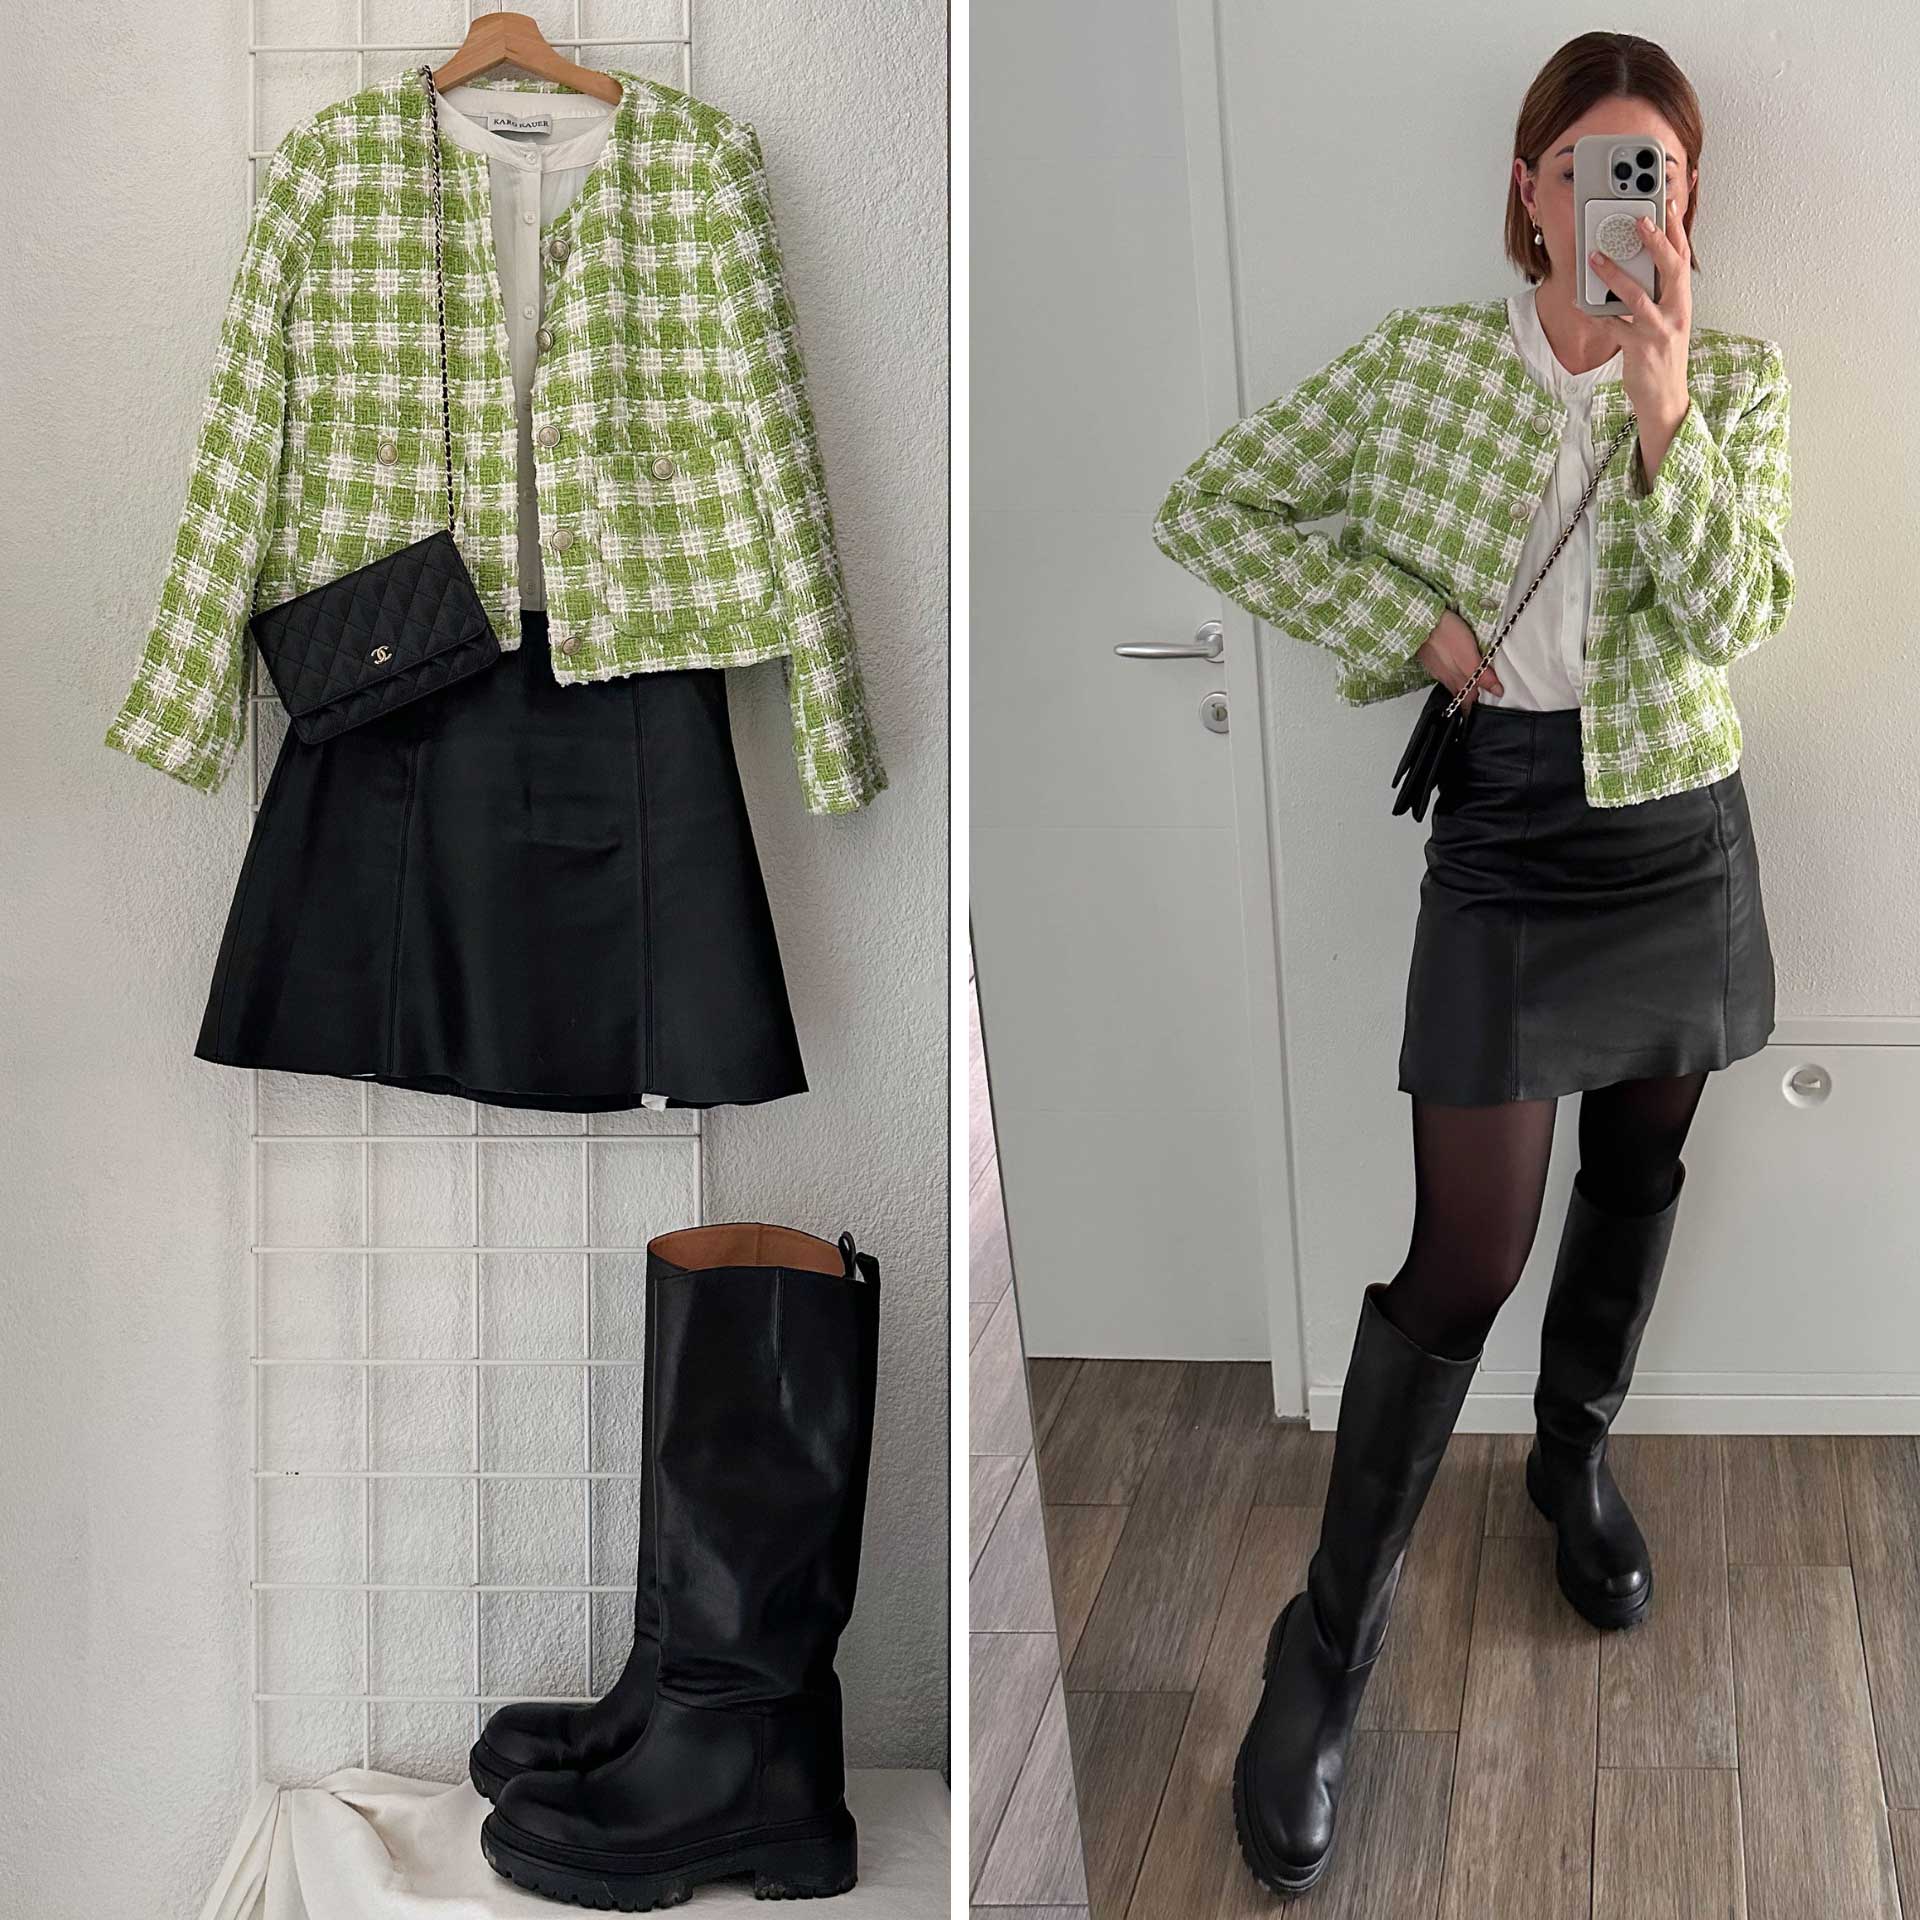 Was ziehe ich heute an? Du bist auf der Suche nach Frühlingsoutfits? Am Modeblog zeige ich dir 5 Outfit-Ideen. Wie wäre es mit einer Kombination aus schwarzem Lederrock, kniehohen Boots und Tweed-Jacke?